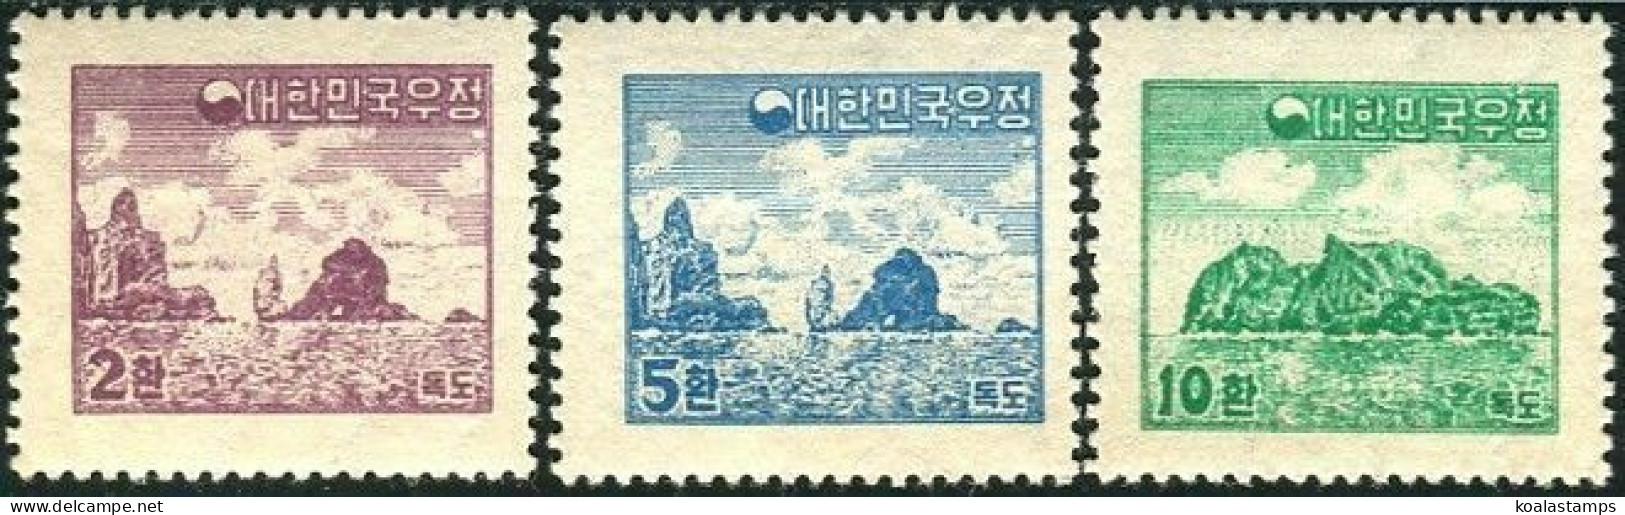 Korea South 1954 SG221 Island Set MLH - Korea, South